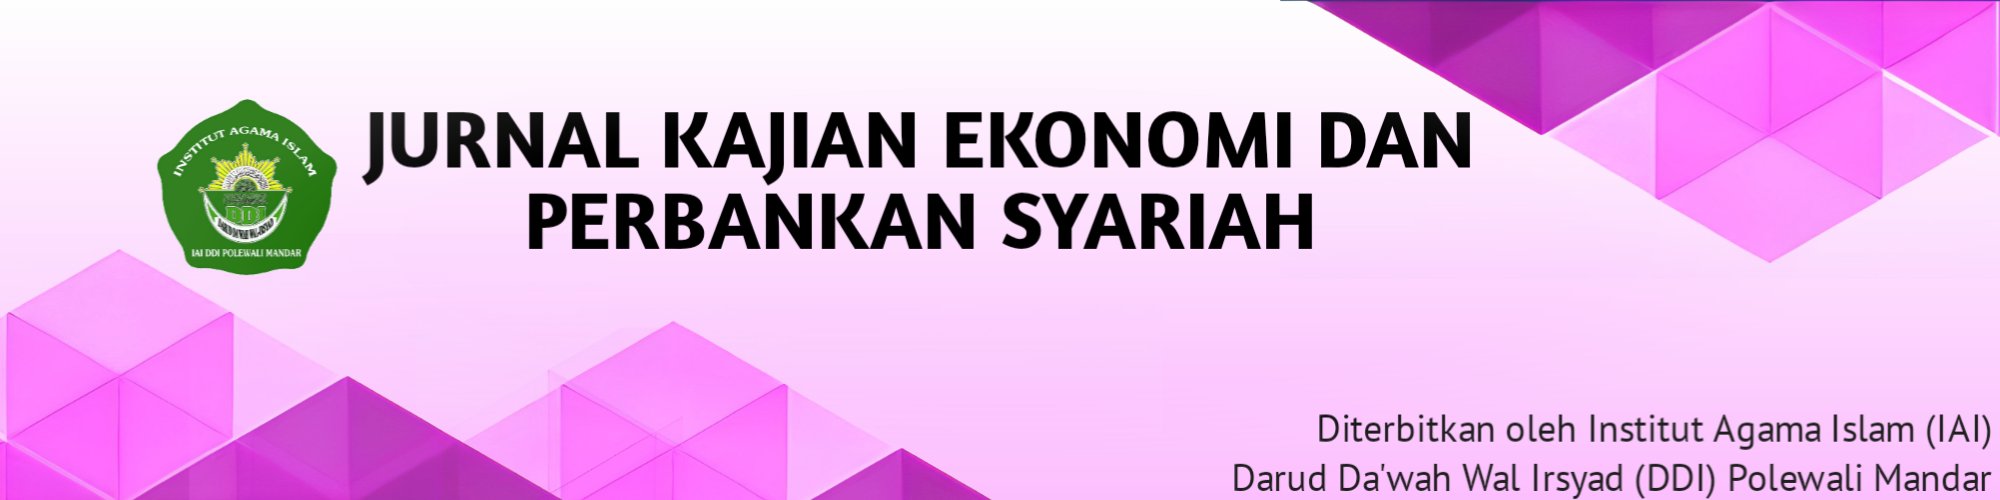 Jurnal Kajian Ekonomi dan Perbankan Syariah